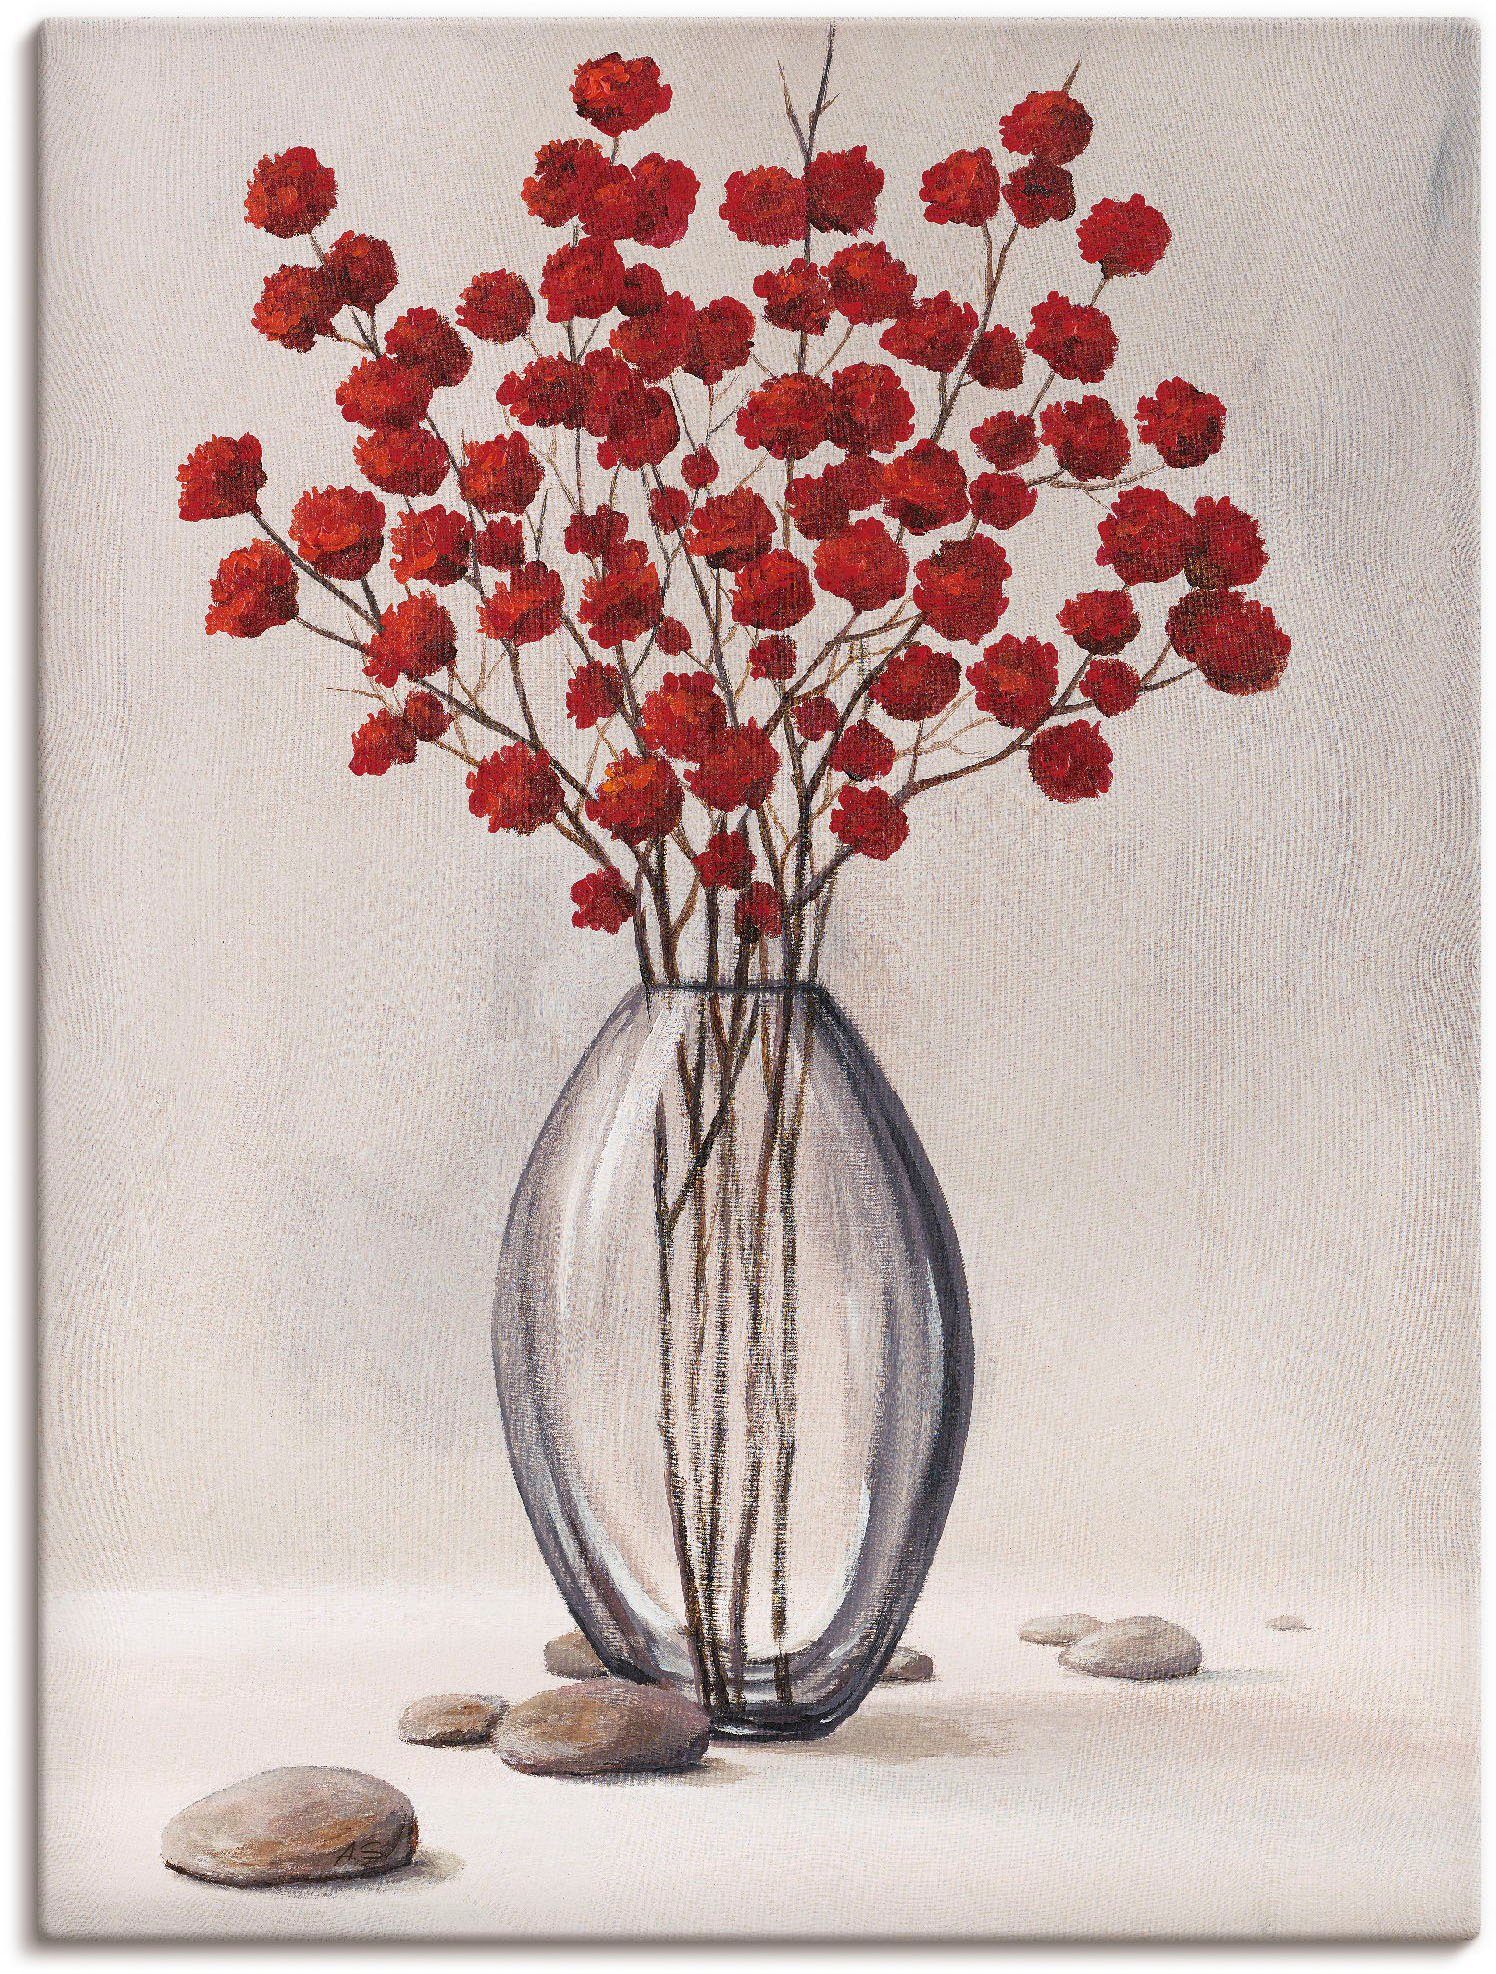 Artland Artprint Dekorative rote Herbstblumen in vele afmetingen & productsoorten - artprint van aluminium / artprint voor buiten, artprint op linnen, poster, muursticker / wandfol